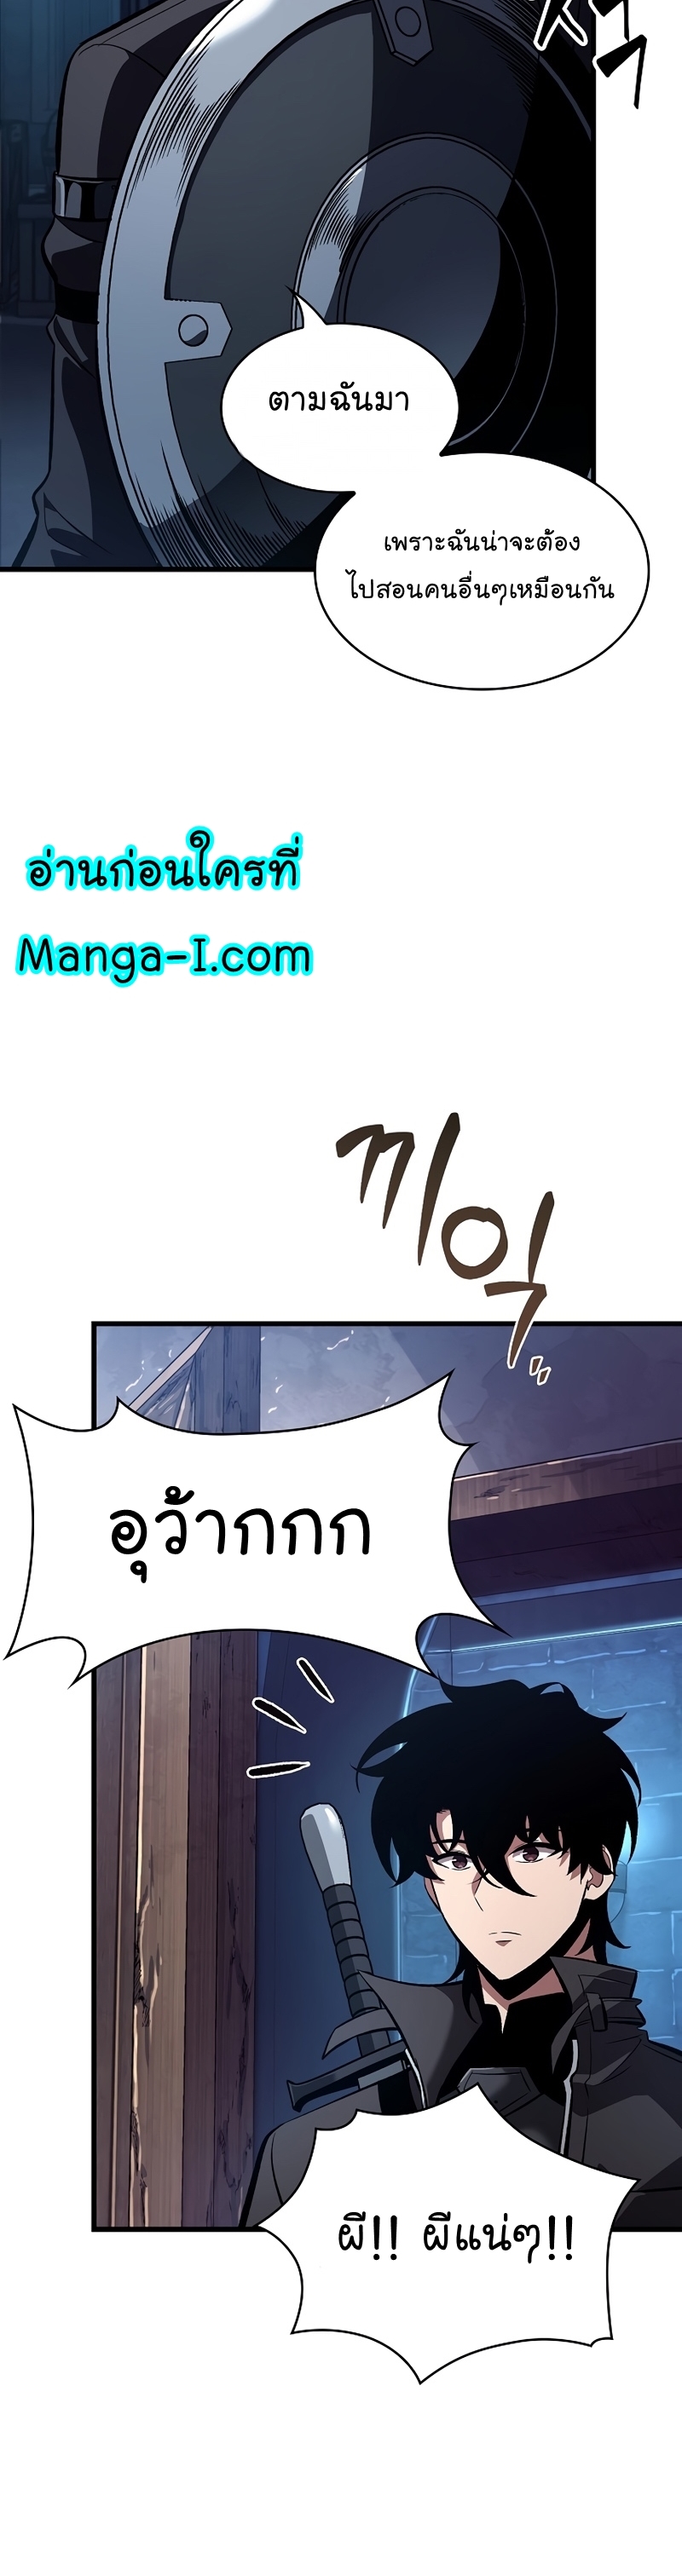 Manga I Manwha Pick Me 43 (8)